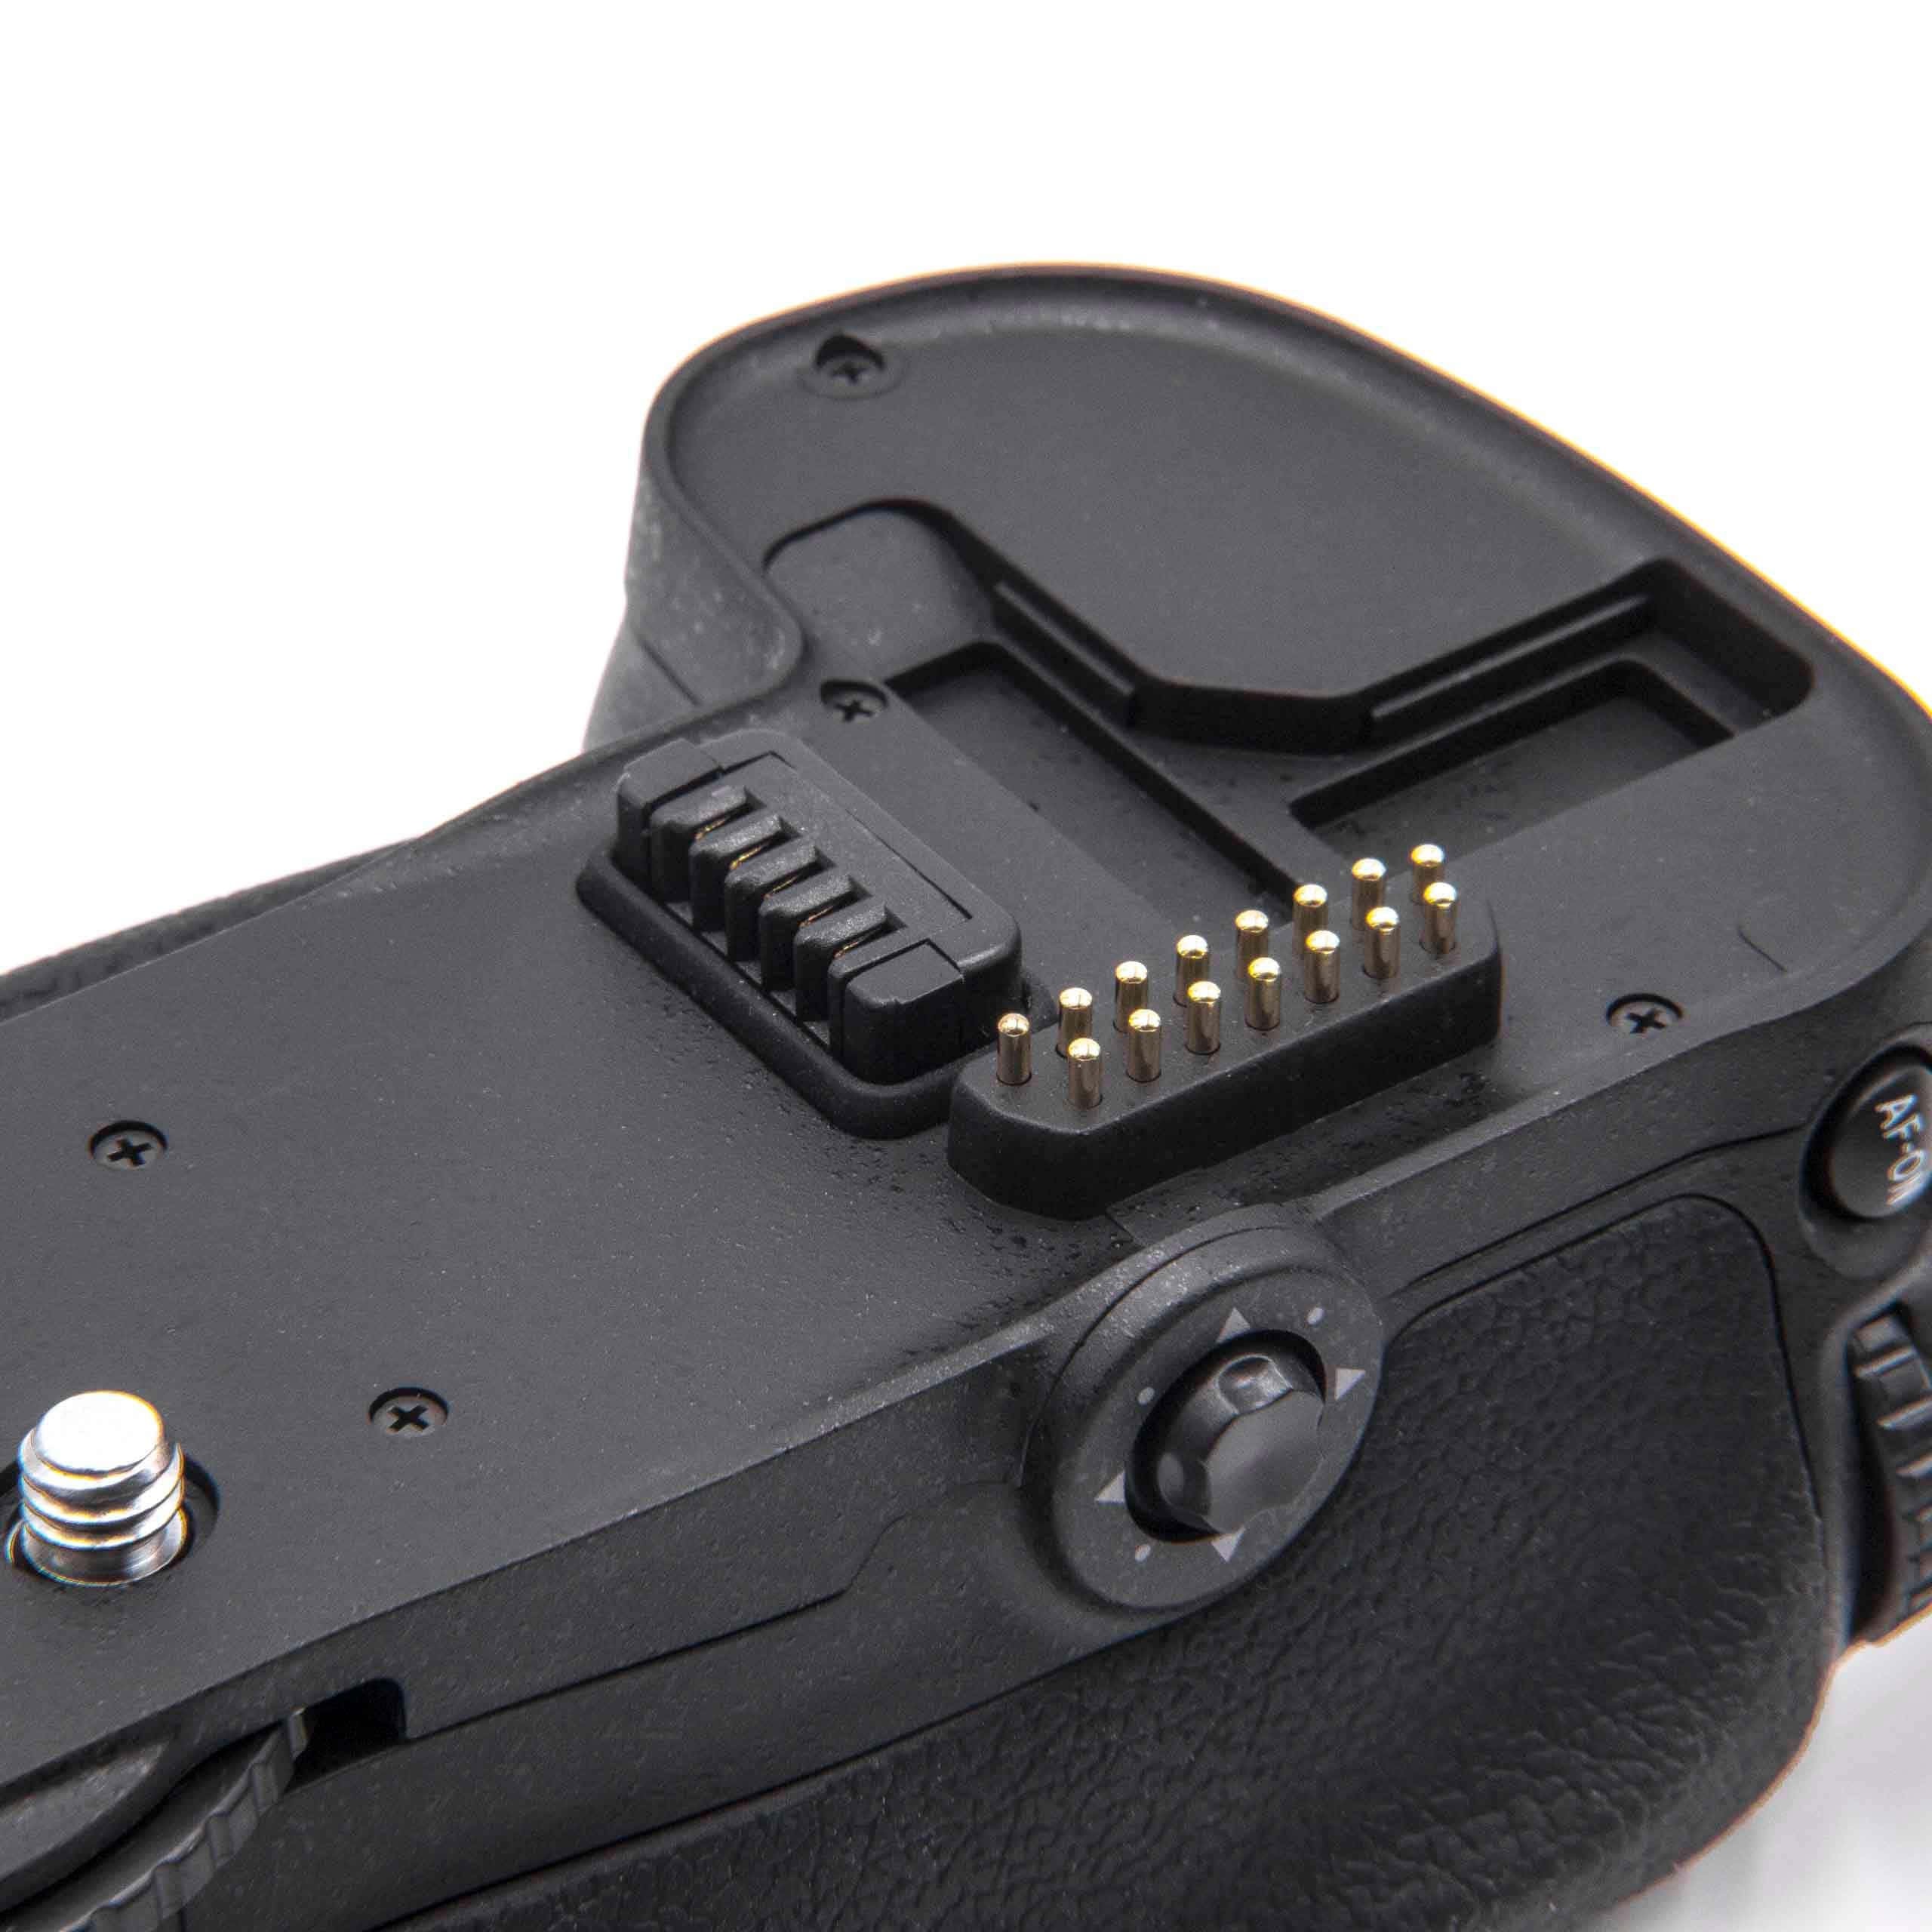 Batterie grip remplace Nikon MB-D10 pour appareil photo Nikon - avec molette 